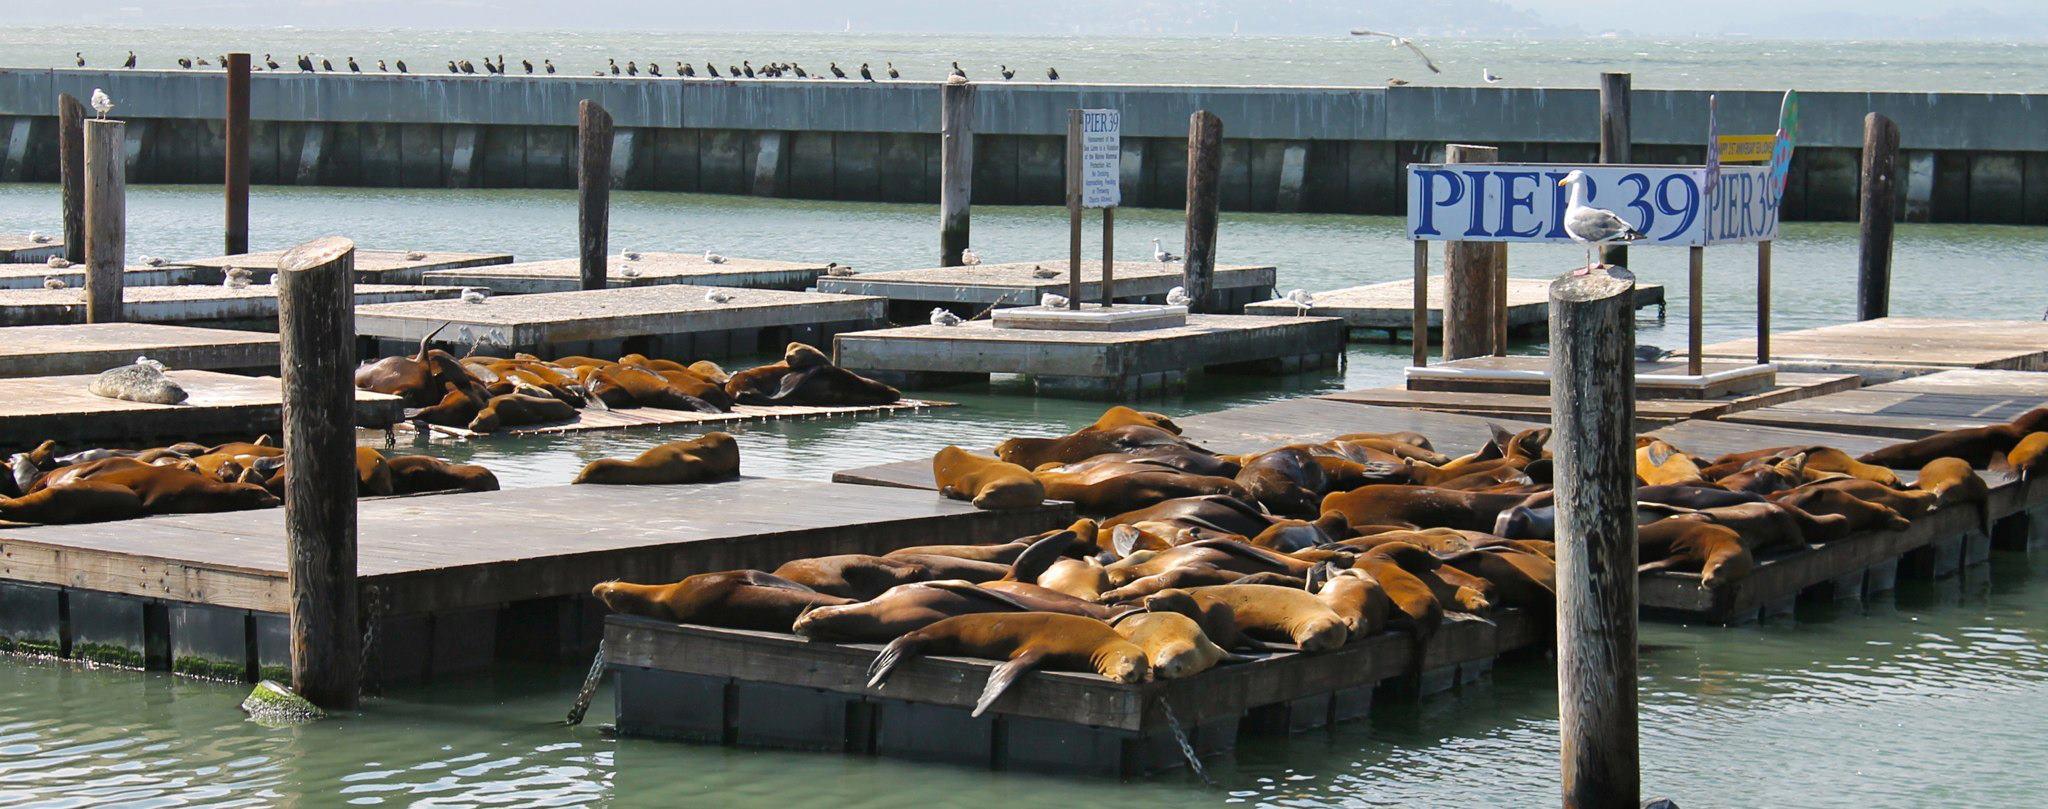 旧金山海狮睡在太阳城市码头39。